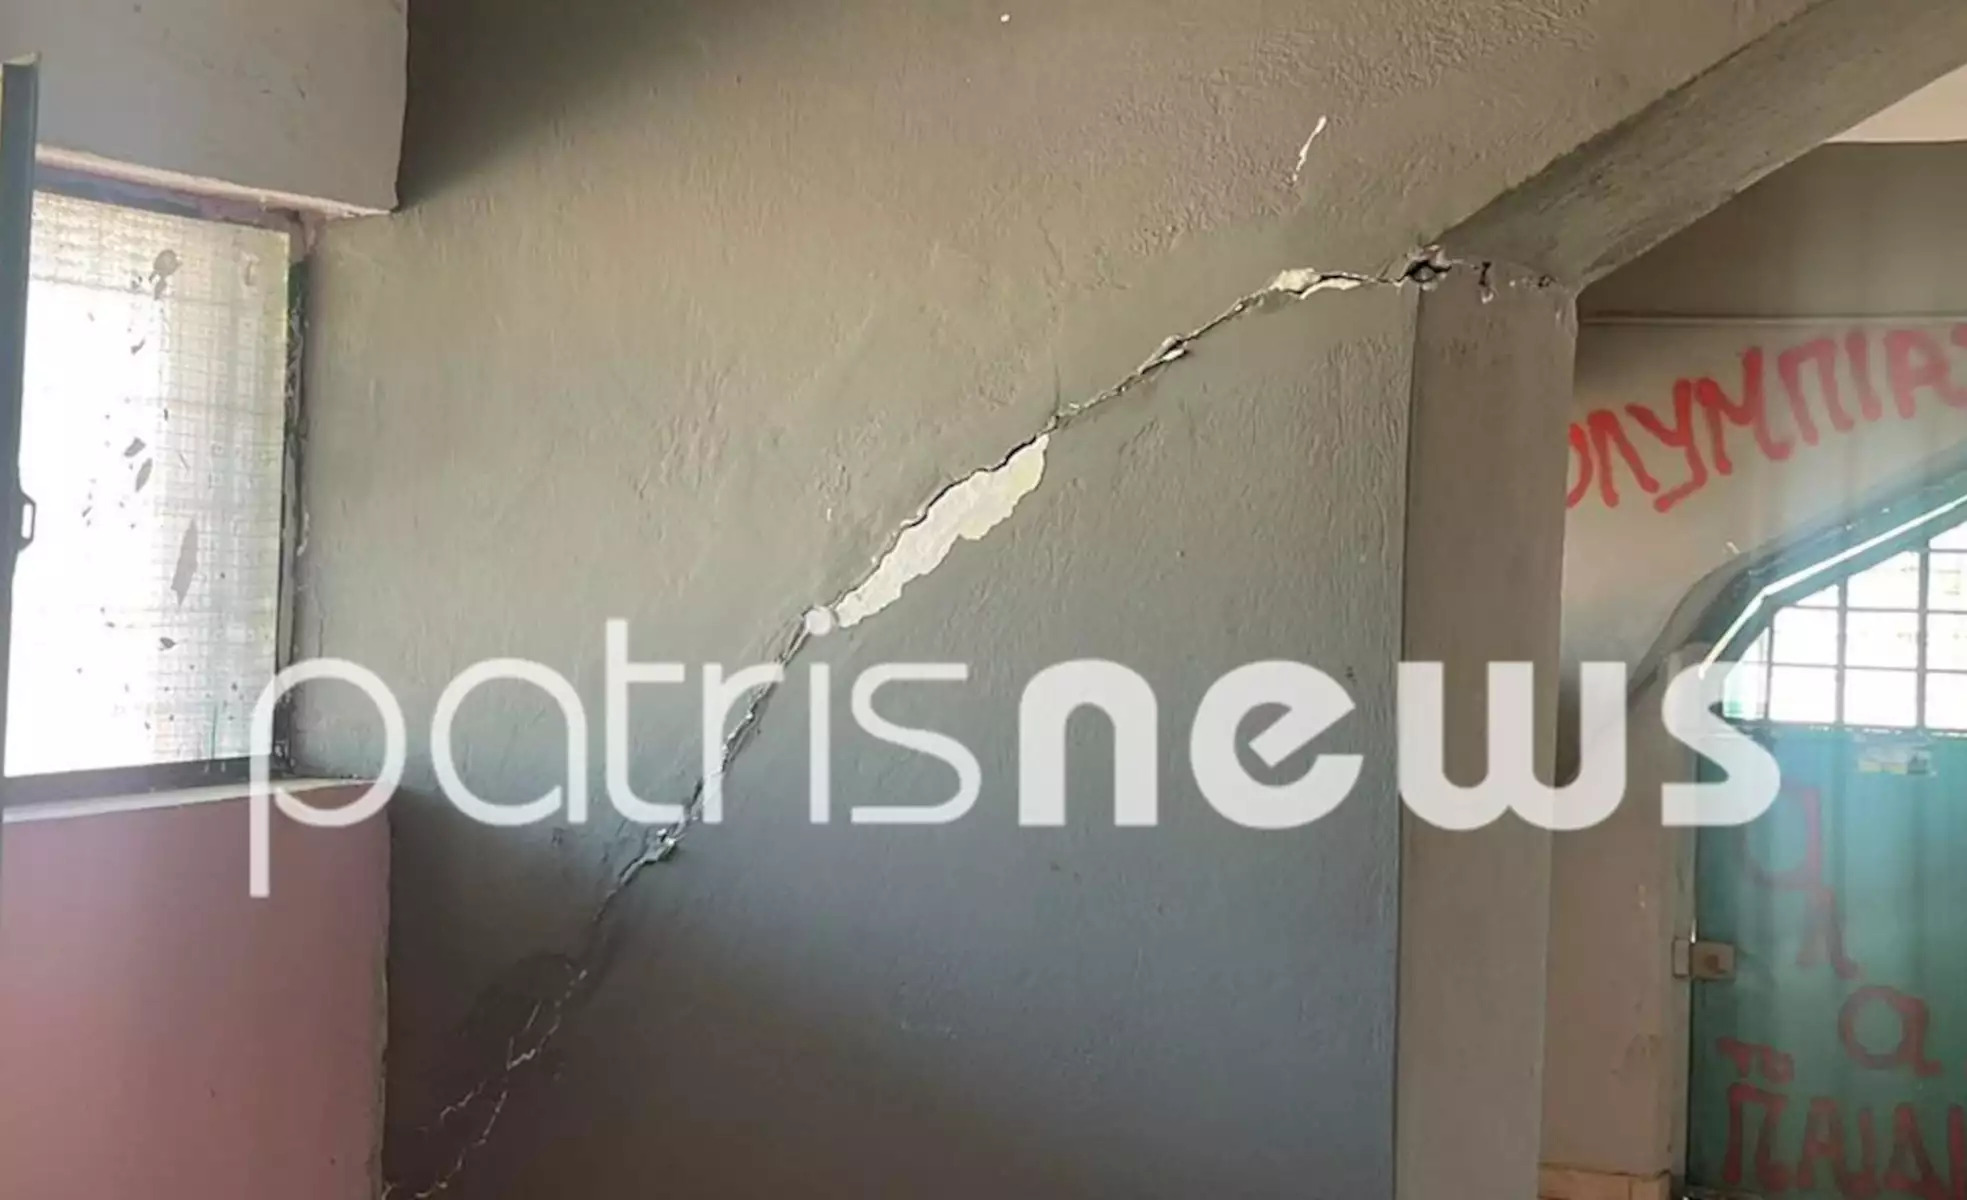 Σεισμός: Σοβαρές ζημιές σε κτήρια στην Ζαχάρω - Ρωγμές σε τοιχώματα, κατέρρευσαν μαντρότοιχοι